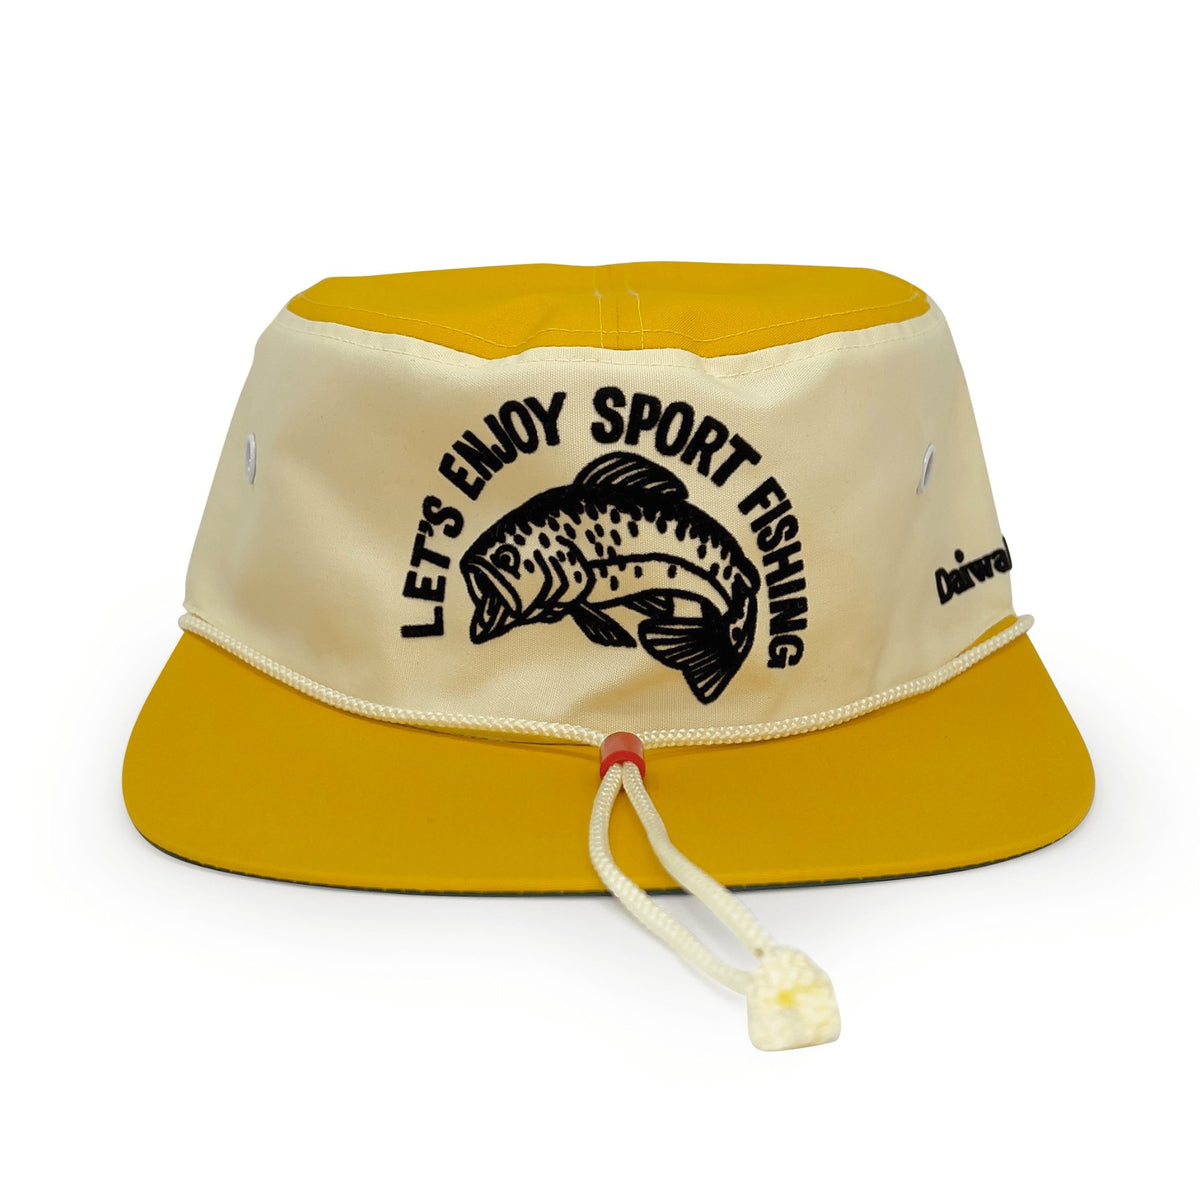 Genuine Vintage Showa Era Japan Daiwa Fishing Team Cap Hat Yellow - Sugoi JDM